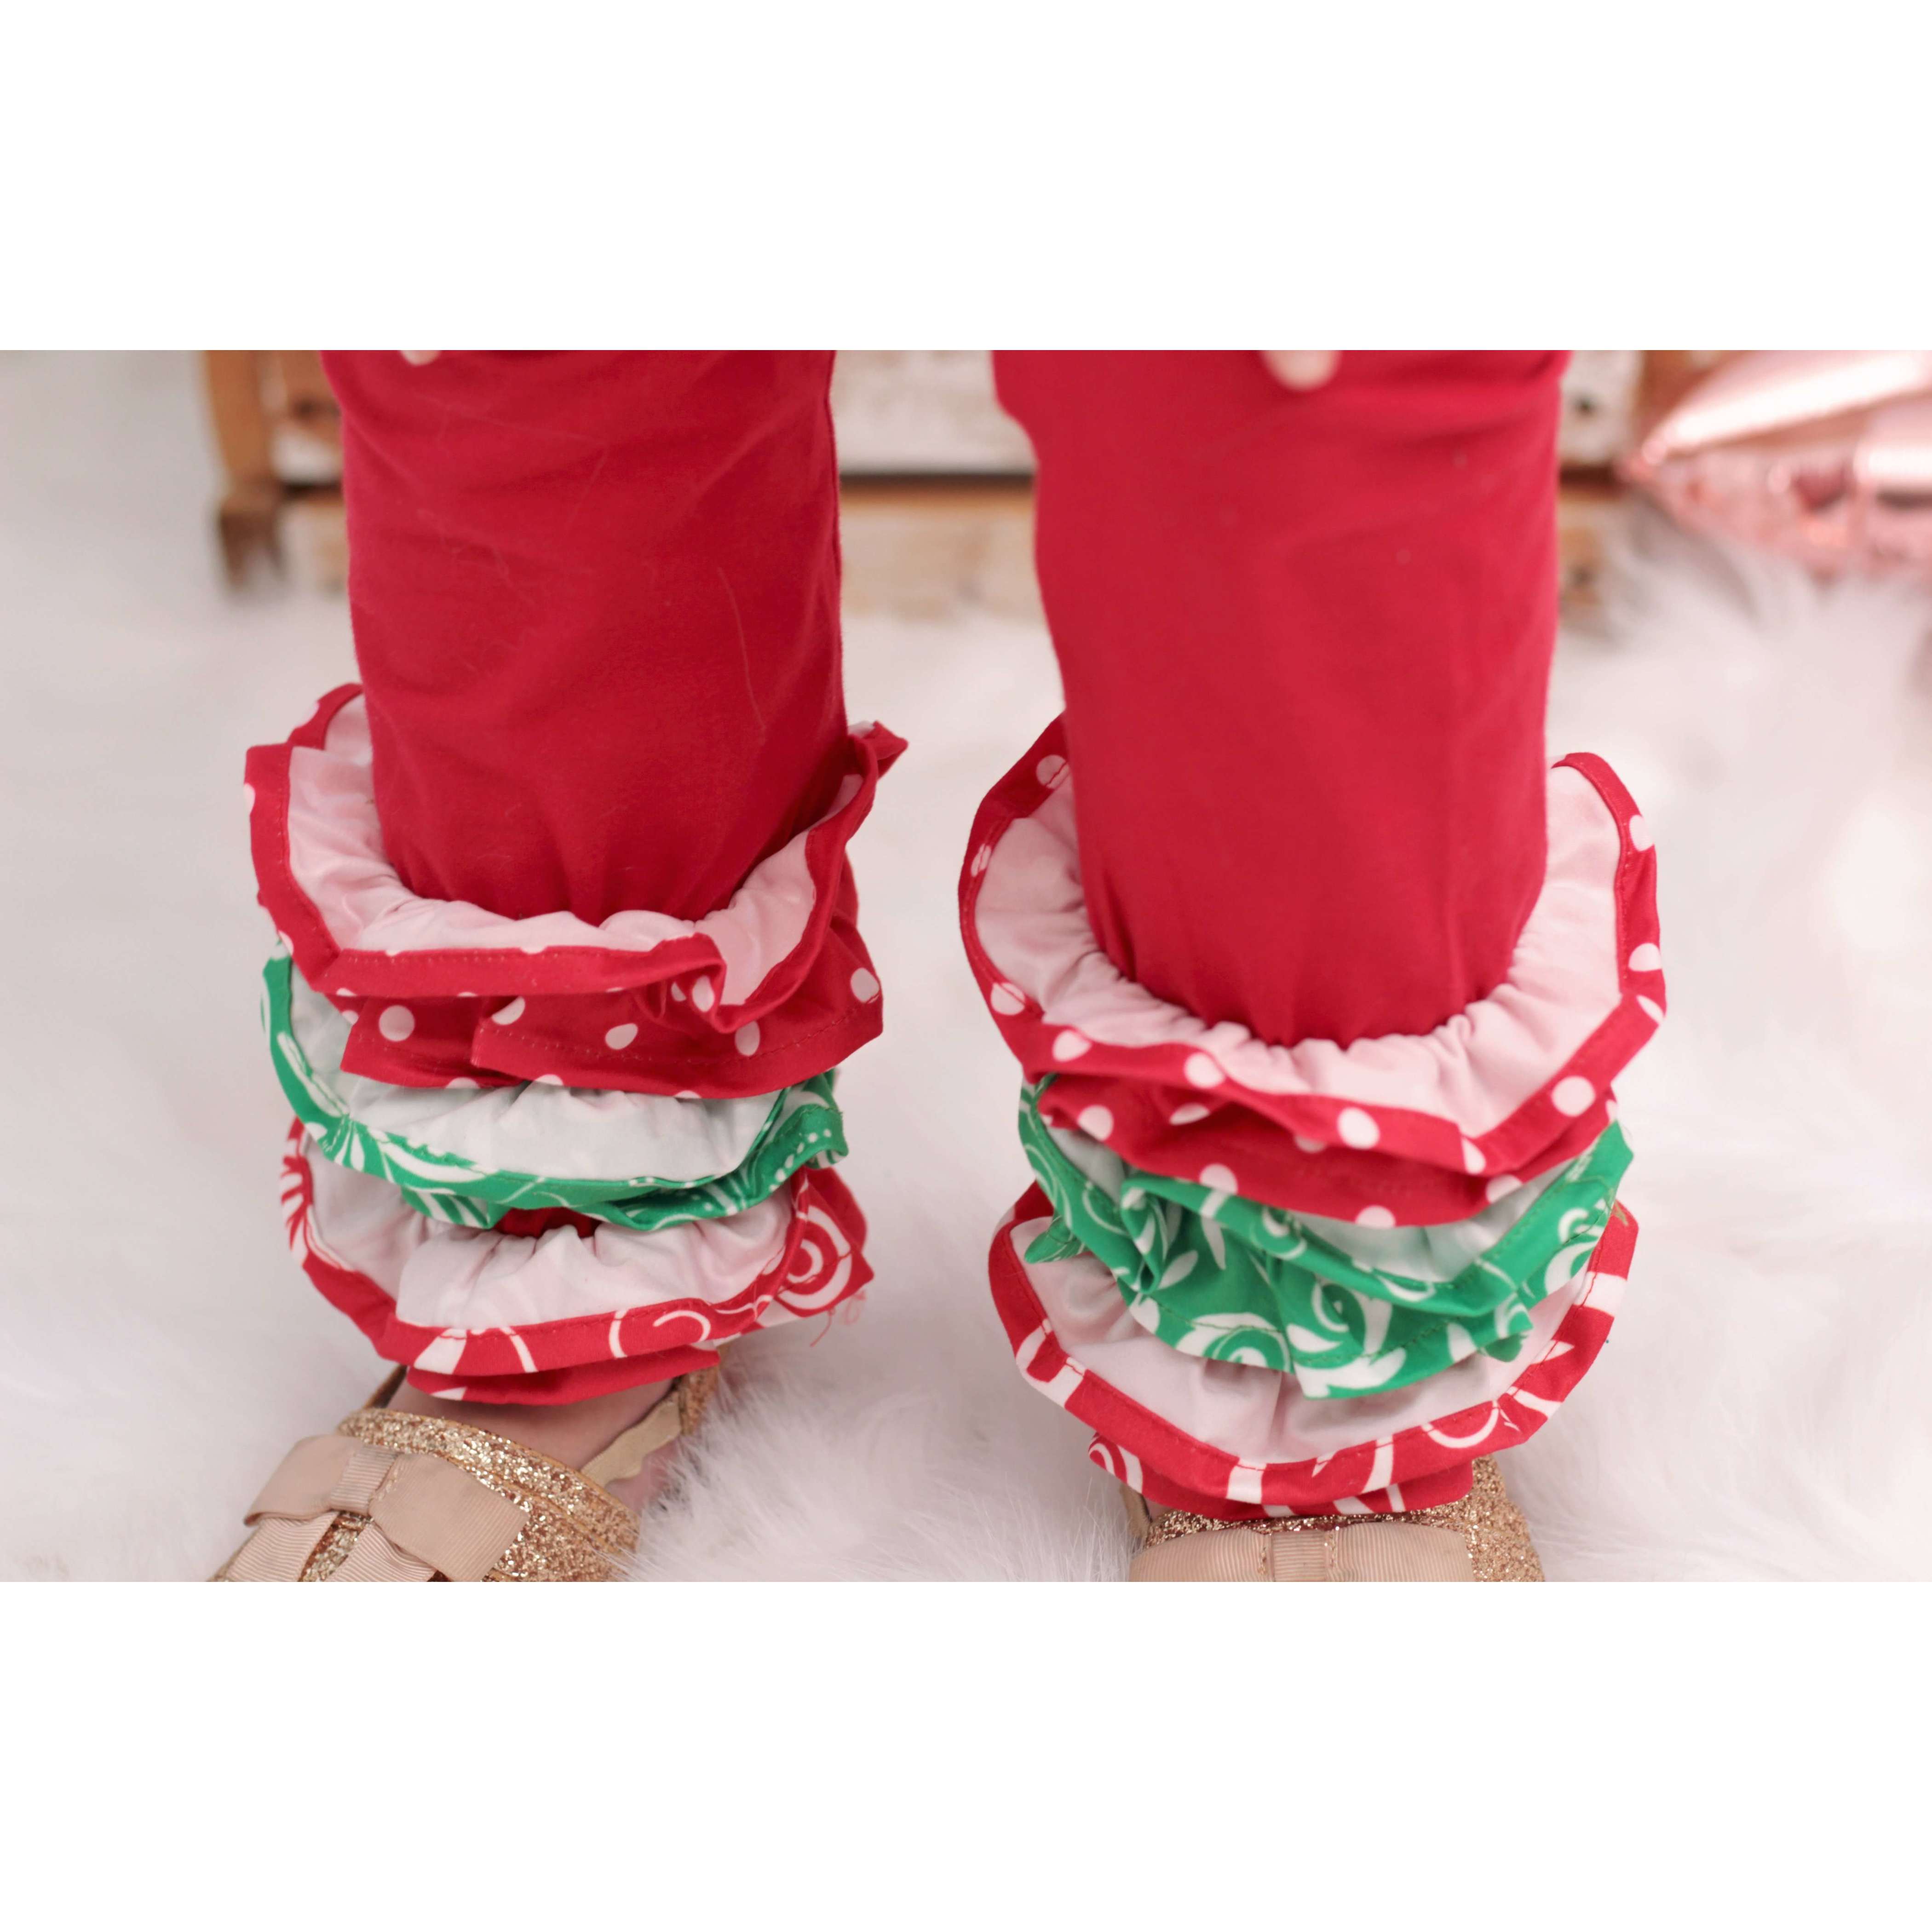 Angeline Kids:Baby Toddler Little Girls Christmas Tree Ruffles Skirt Set - Red White